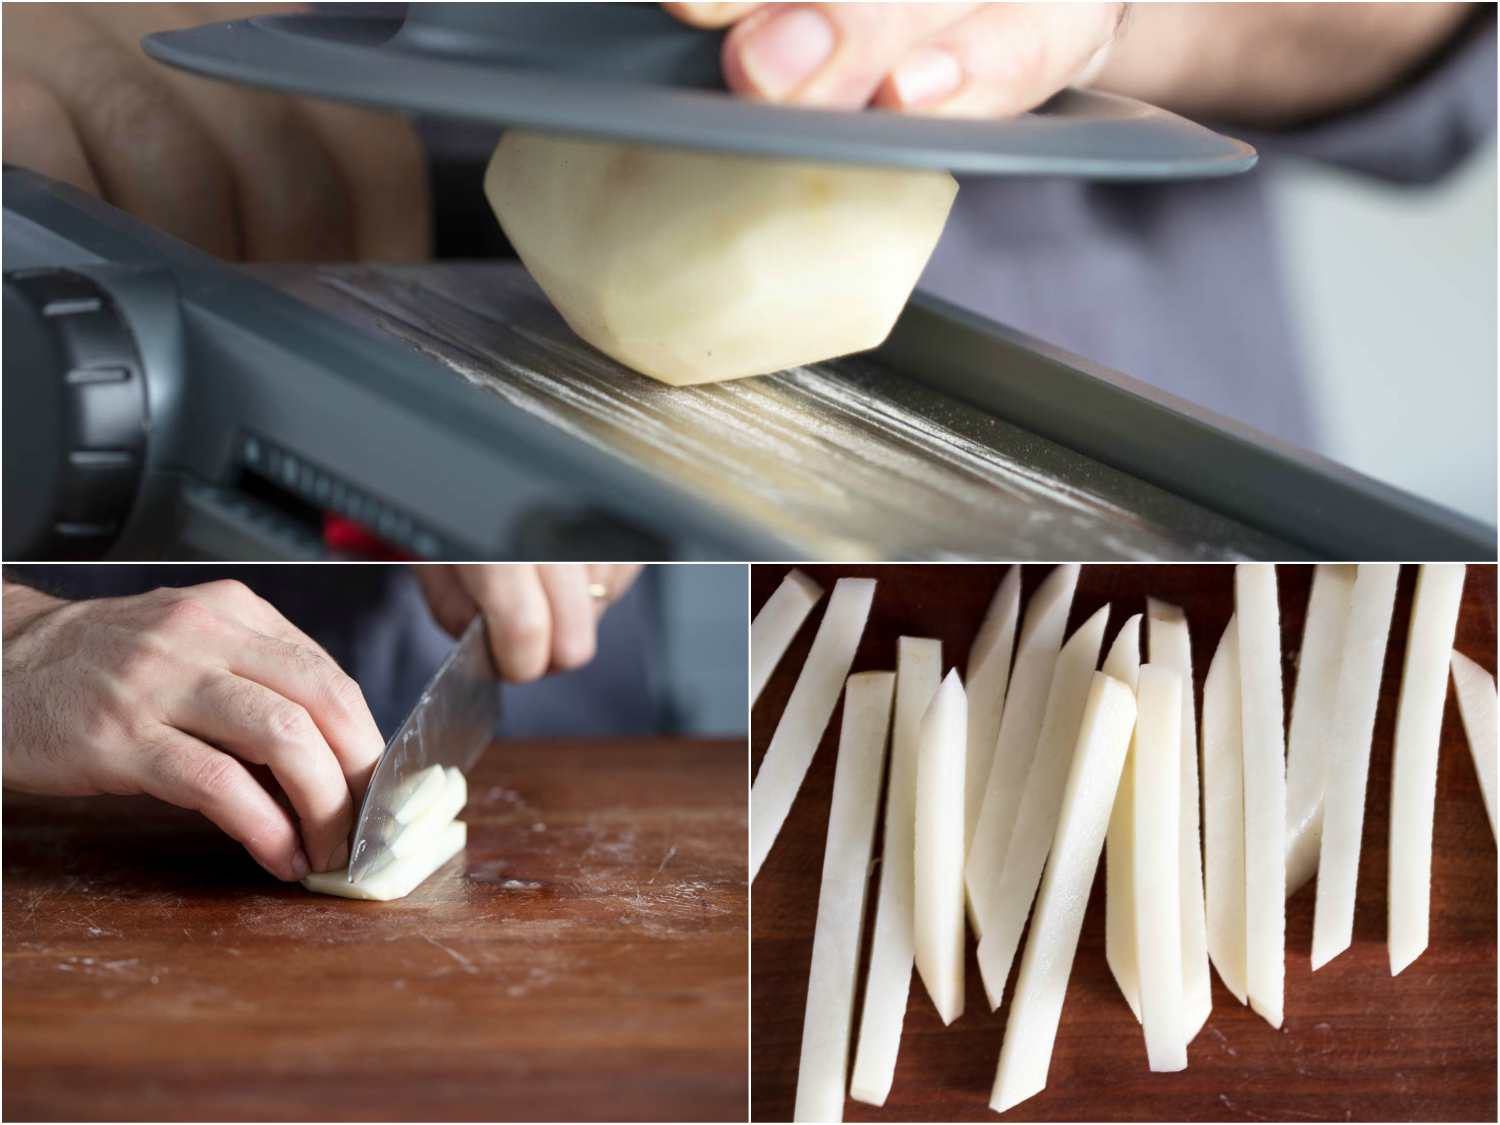 处理用基本的切片机和刀切炸薯条土豆条的照片:在切片机上切均匀的土豆条，用刀把土豆条切成条，成品条